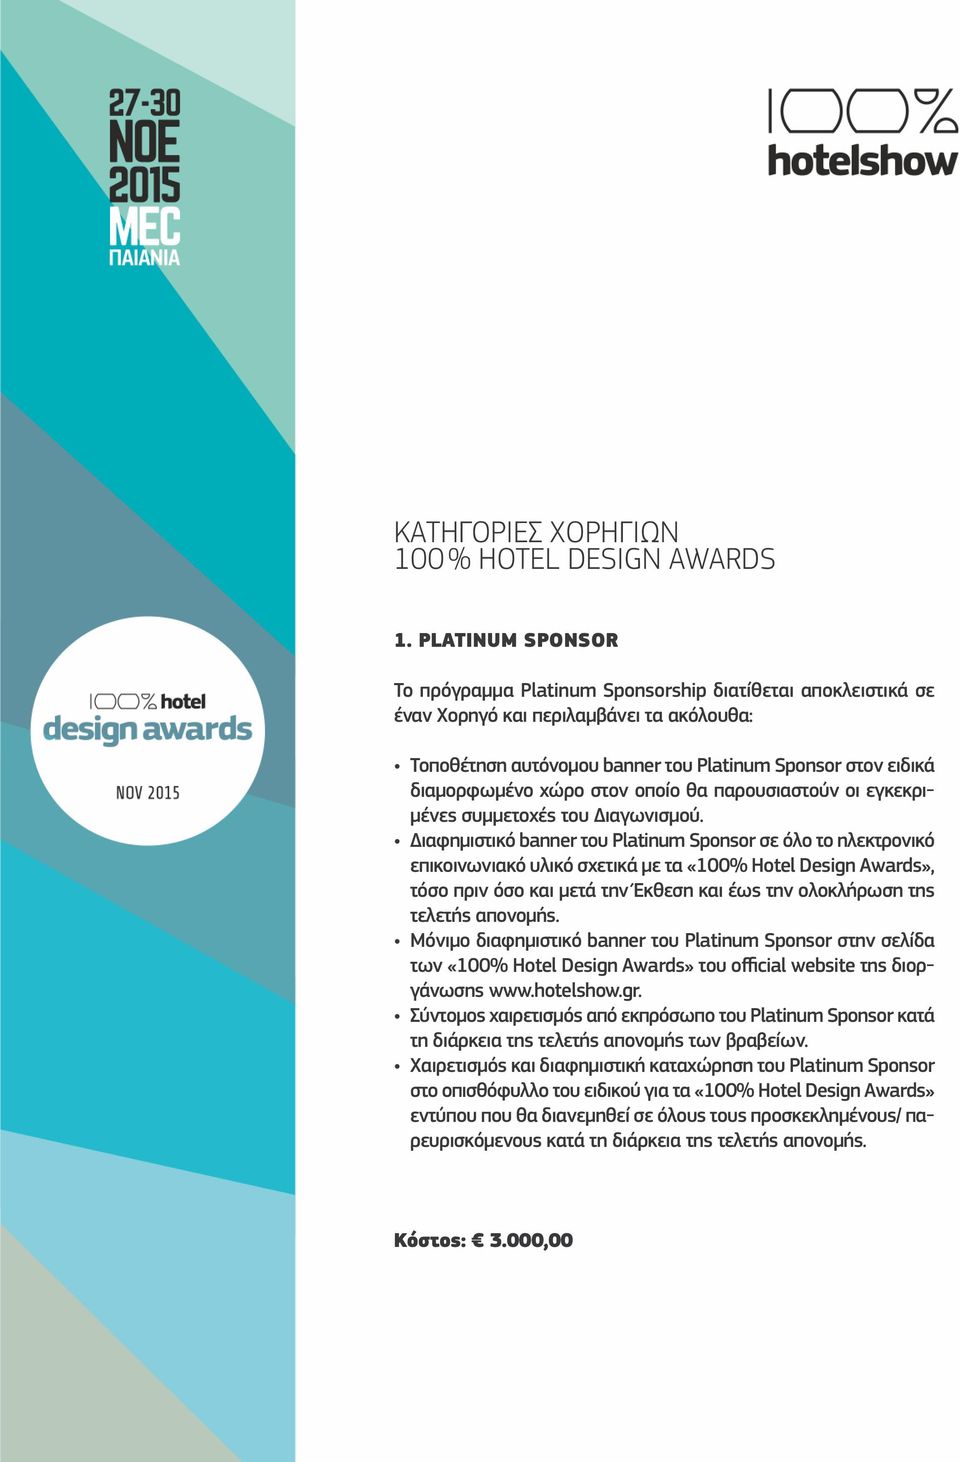 την Έκθεση και έως την ολοκλήρωση της τελετής απονομής. Μόνιμο διαφημιστικό banner του Platinum Sponsor στην σελίδα των «100% Hotel Design Awards» του official website της διοργάνωσης www.hotelshow.